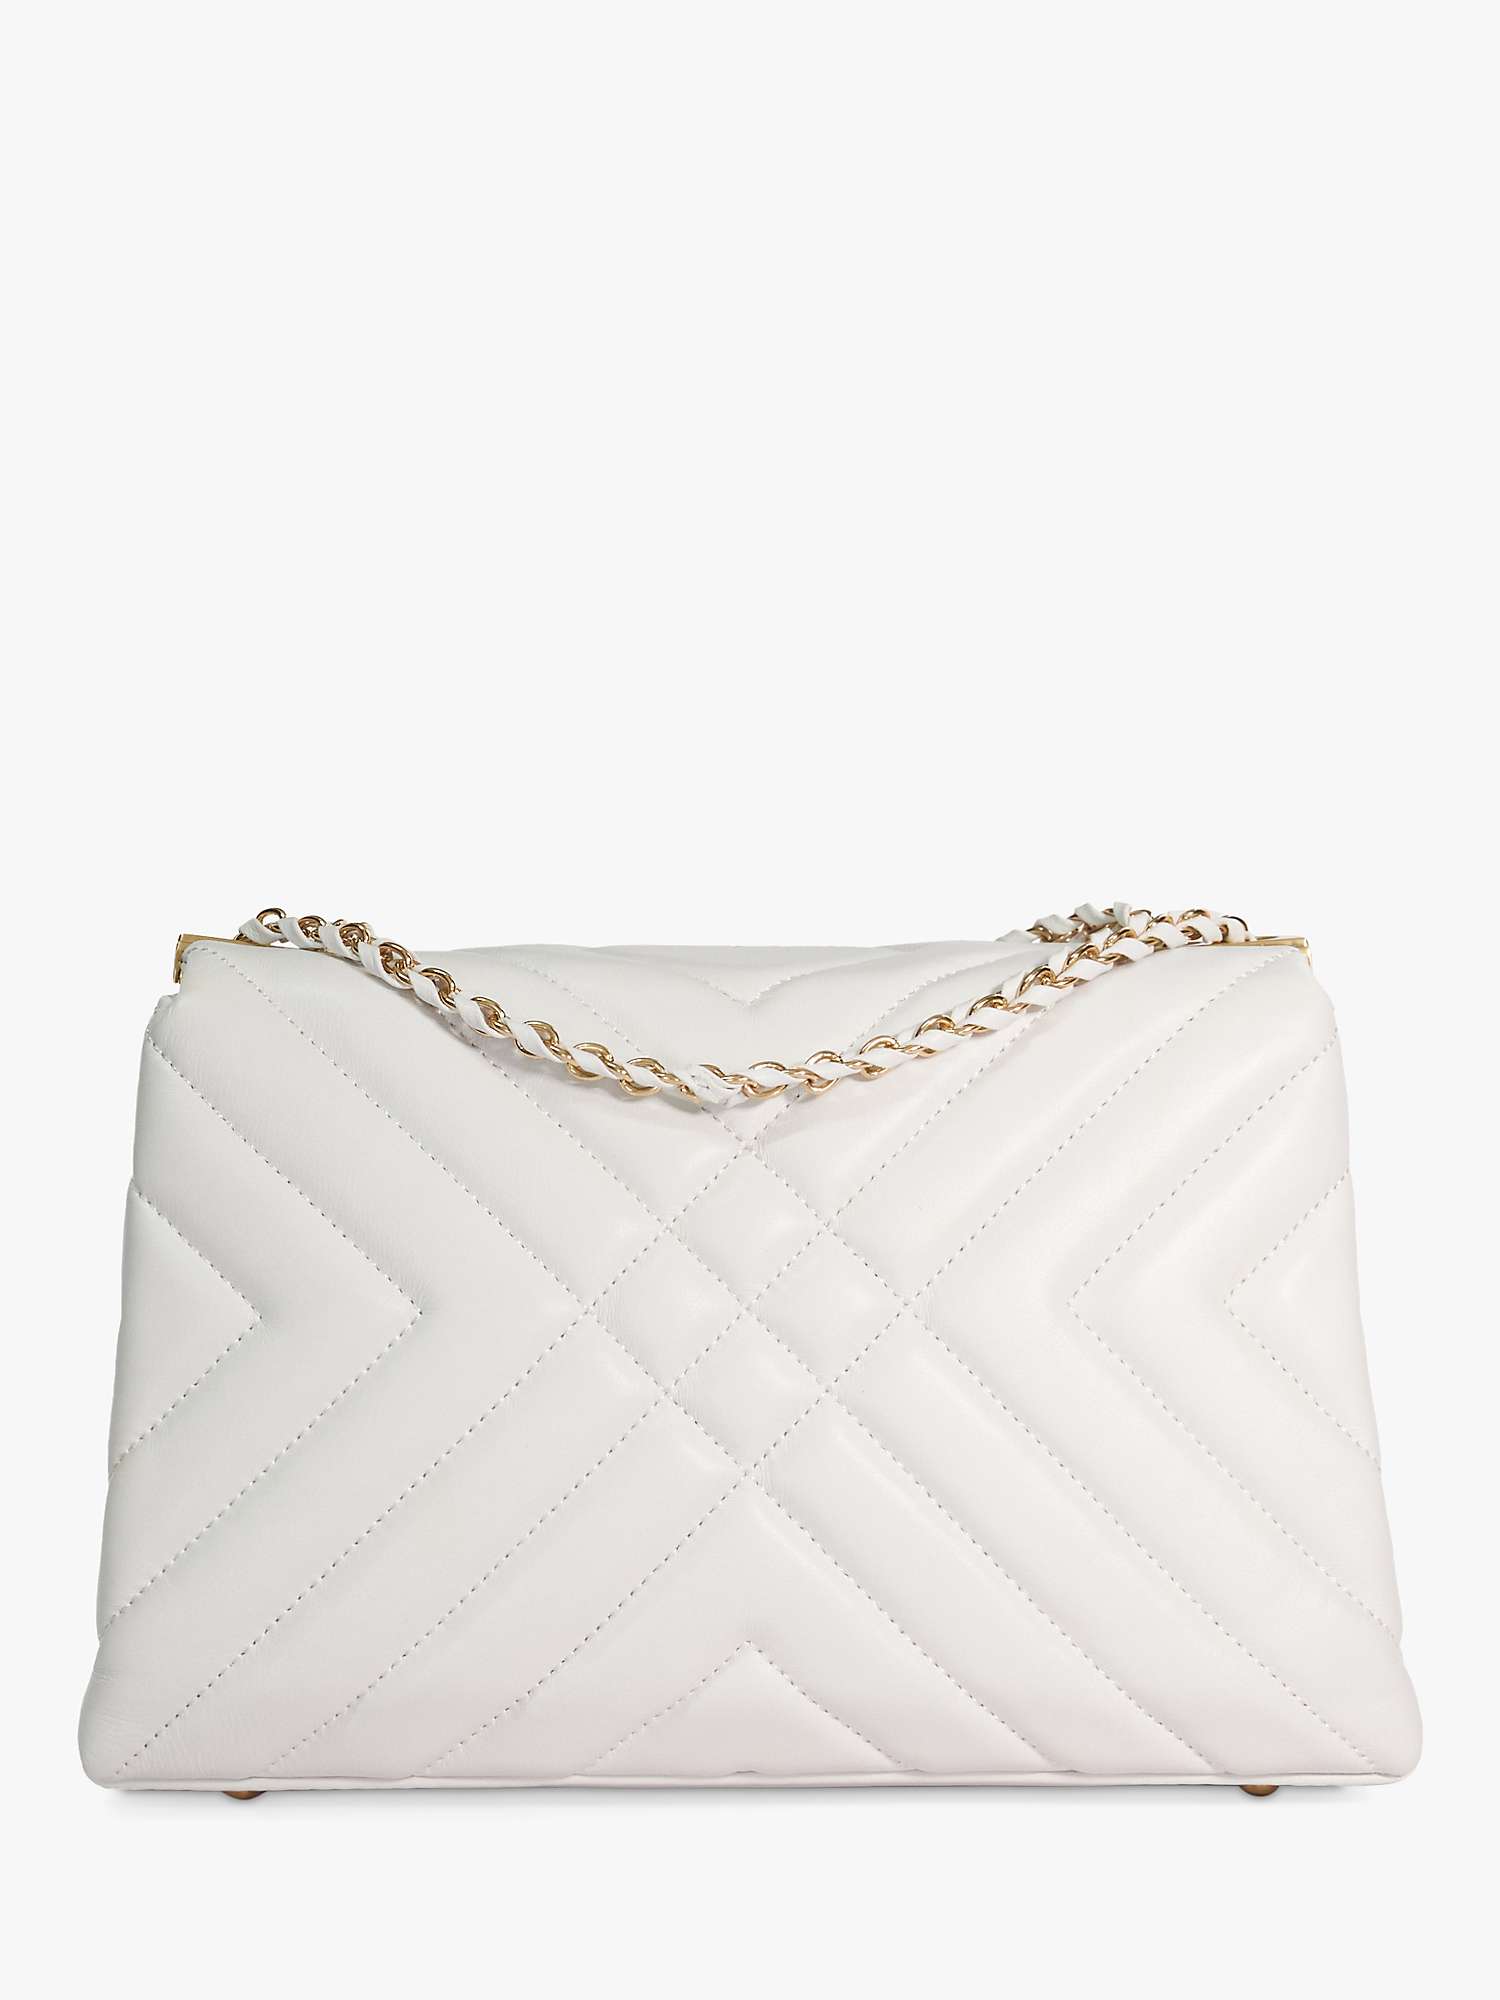 Buy Dune Regent Leather Quilted Shoulder Bag, White Online at johnlewis.com